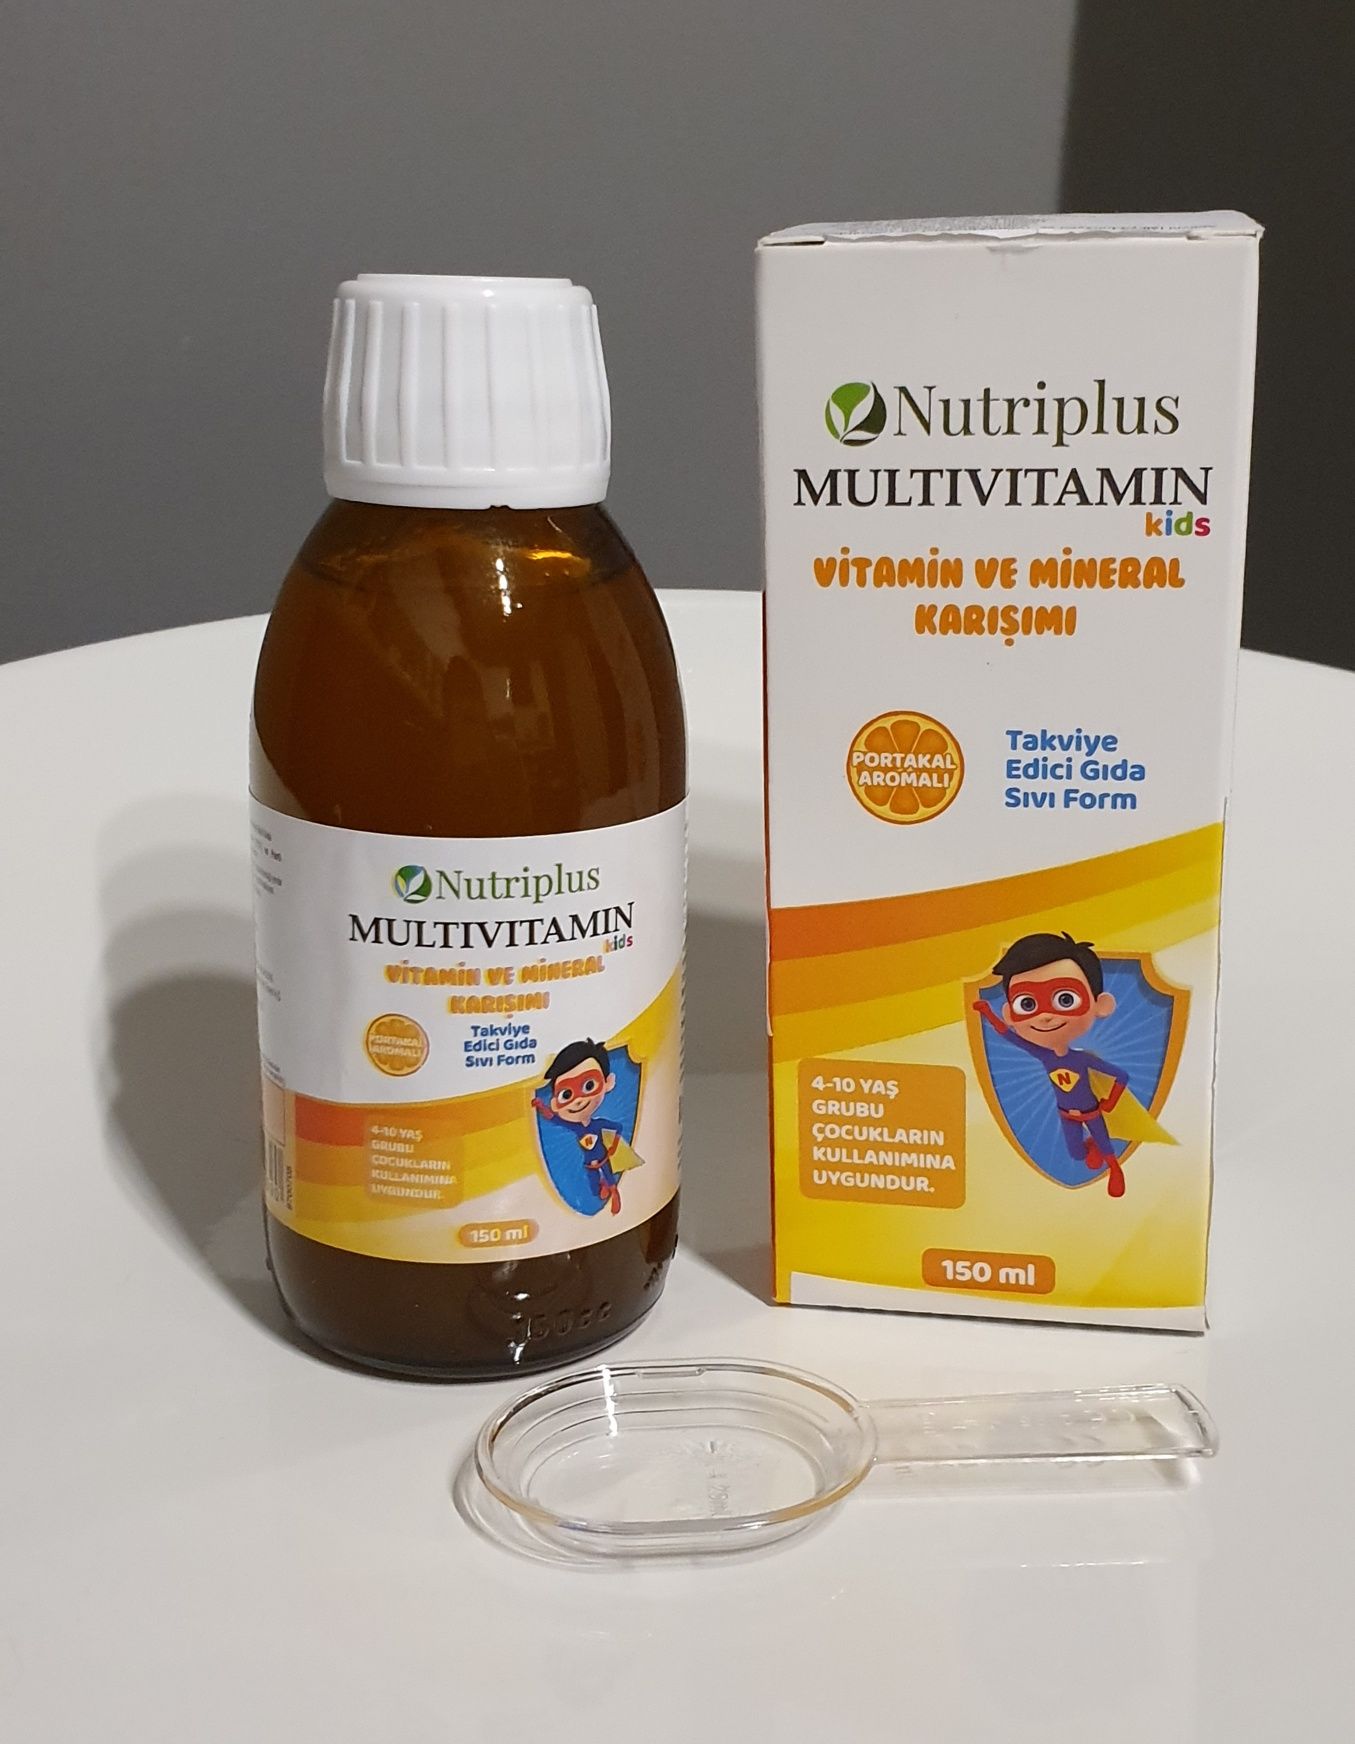 Multiwitamina Nutriplus Dla Dzieci o smaku pomarańczowym Superbohater